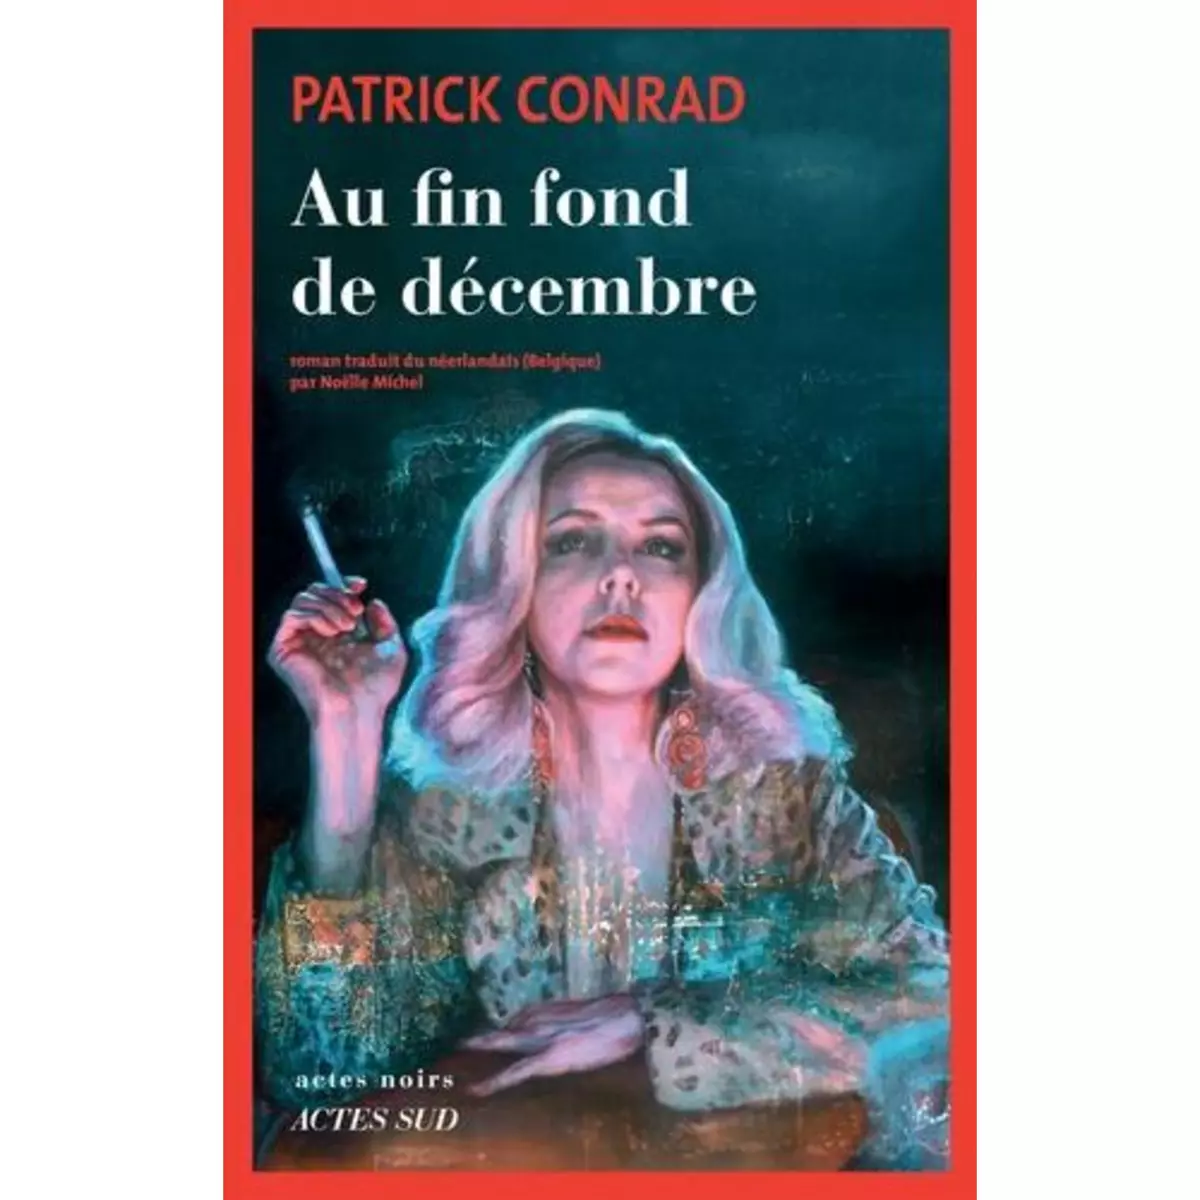  AU FIN FOND DE DECEMBRE, Conrad Patrick